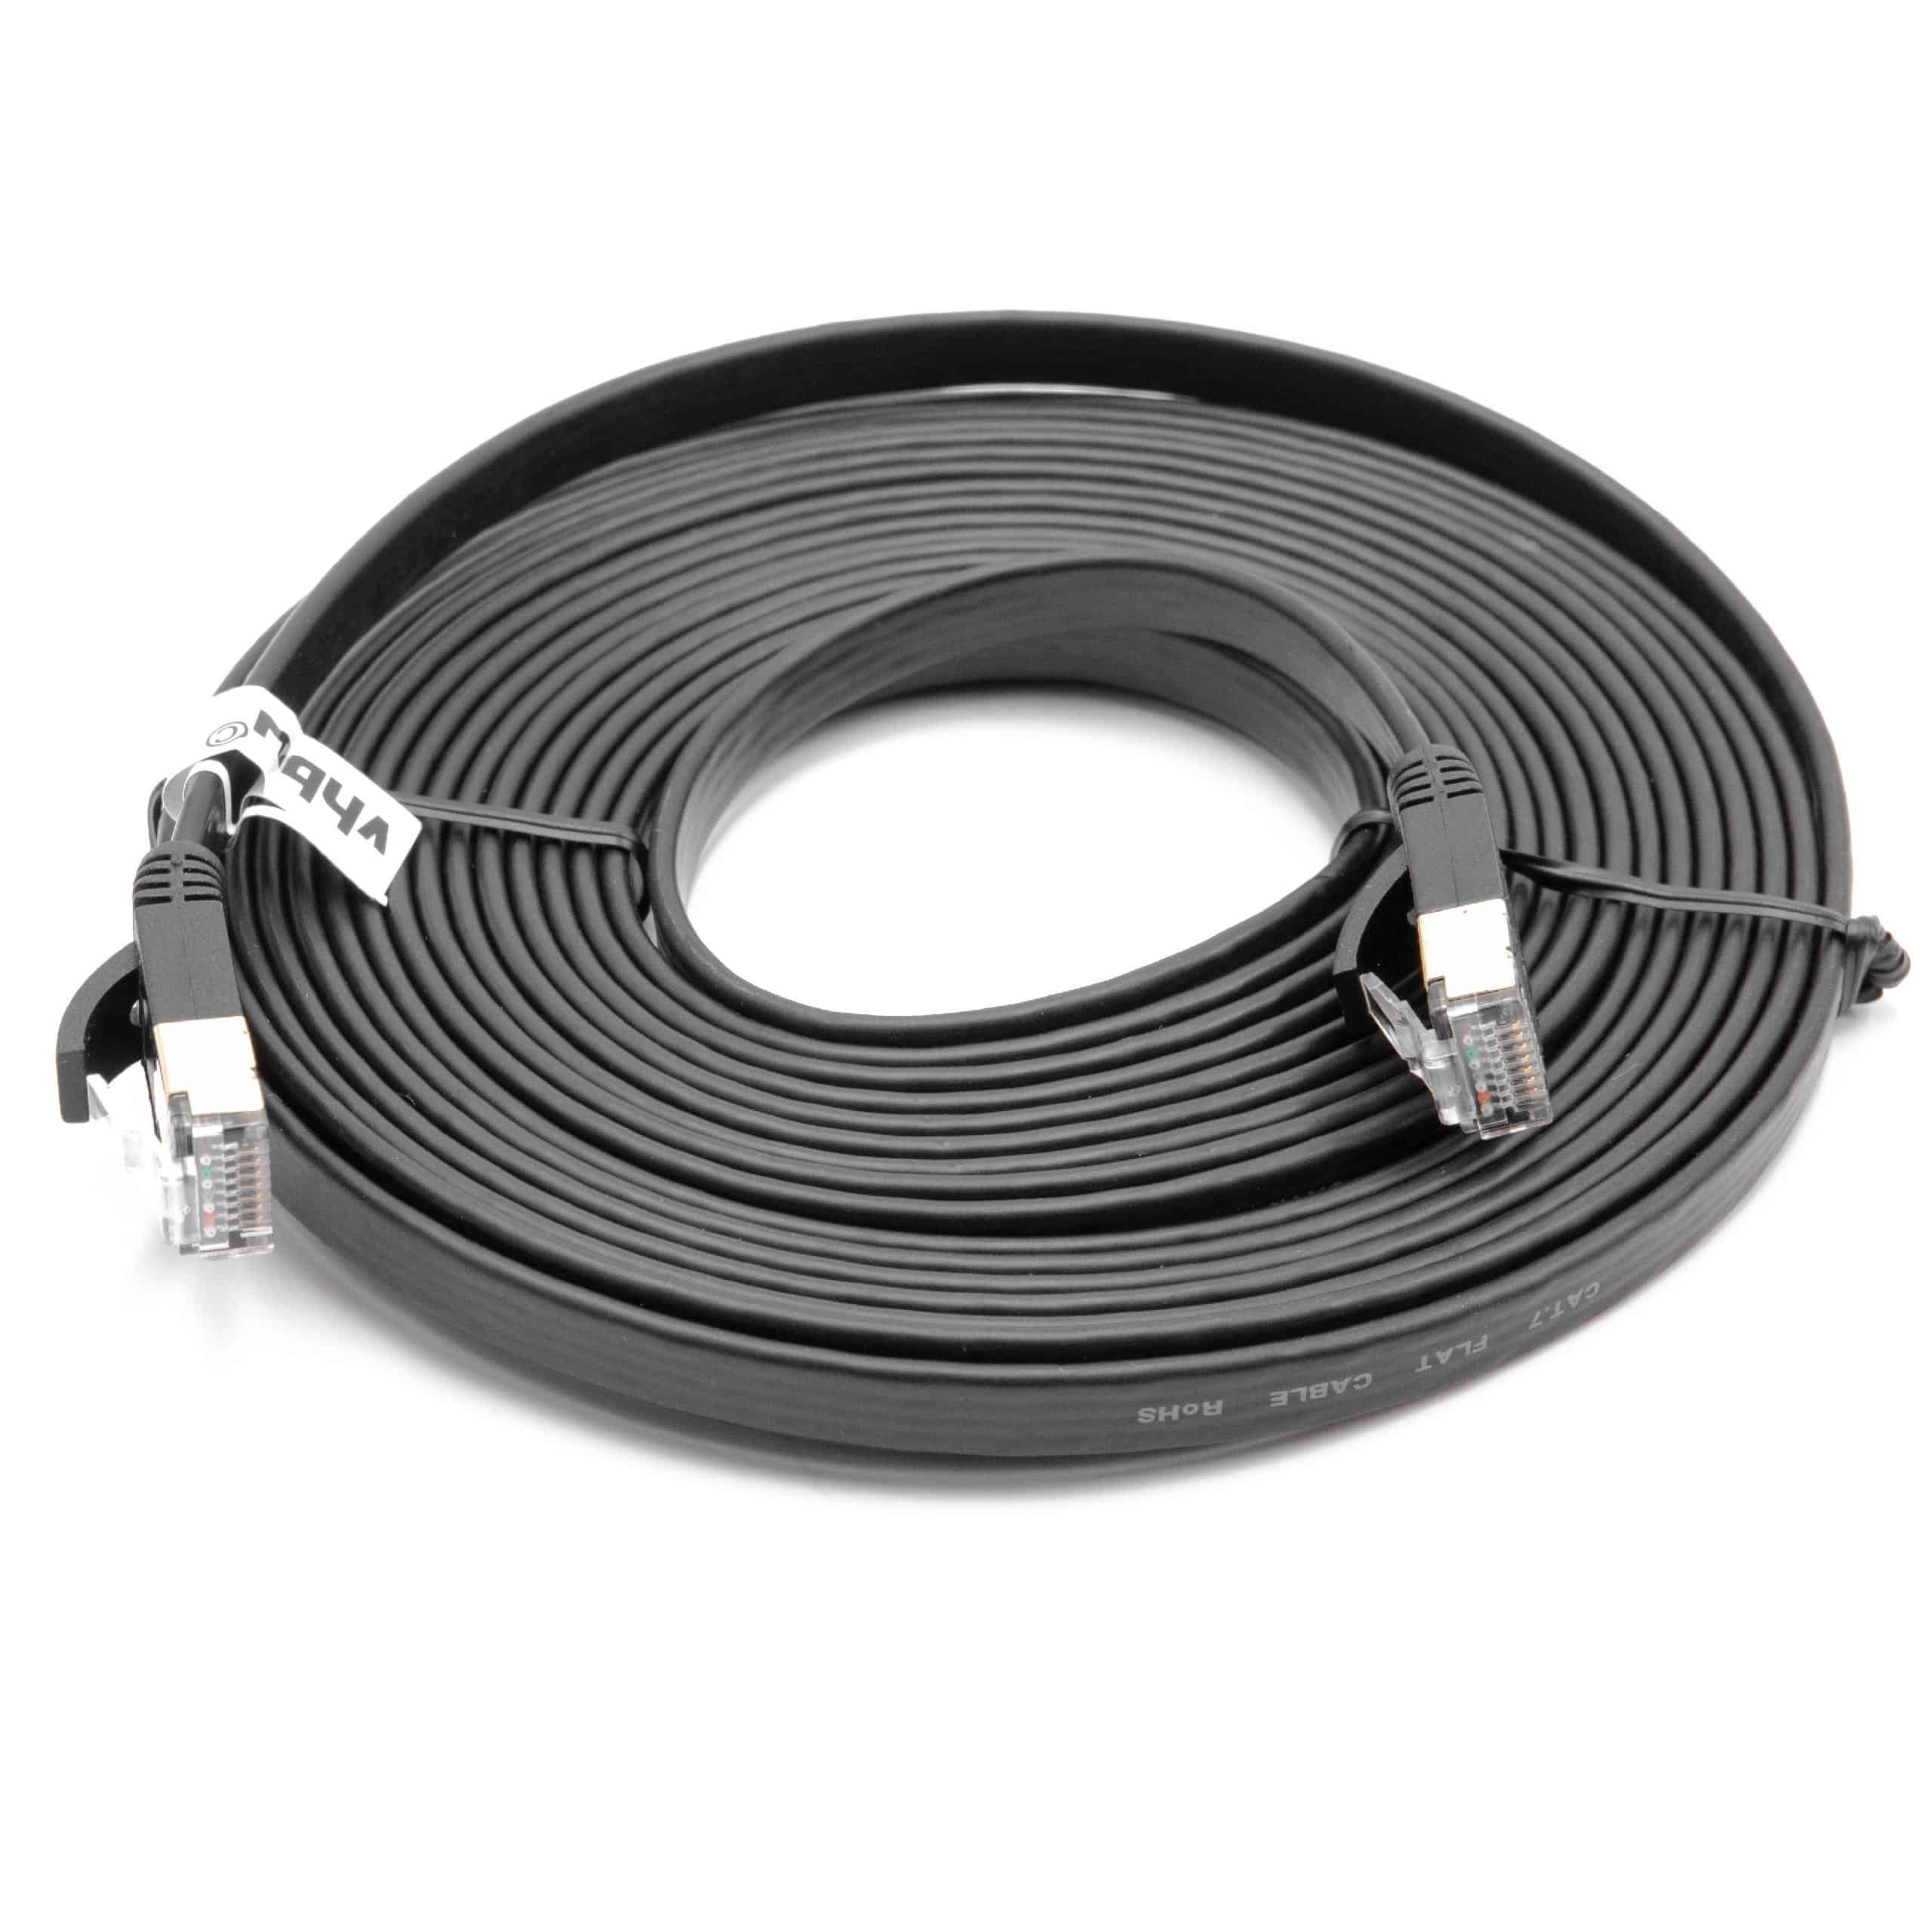 Ethernet LAN Patch Gigabit Network Cable CAT.7 5m black flat design, Internet Modem Cable